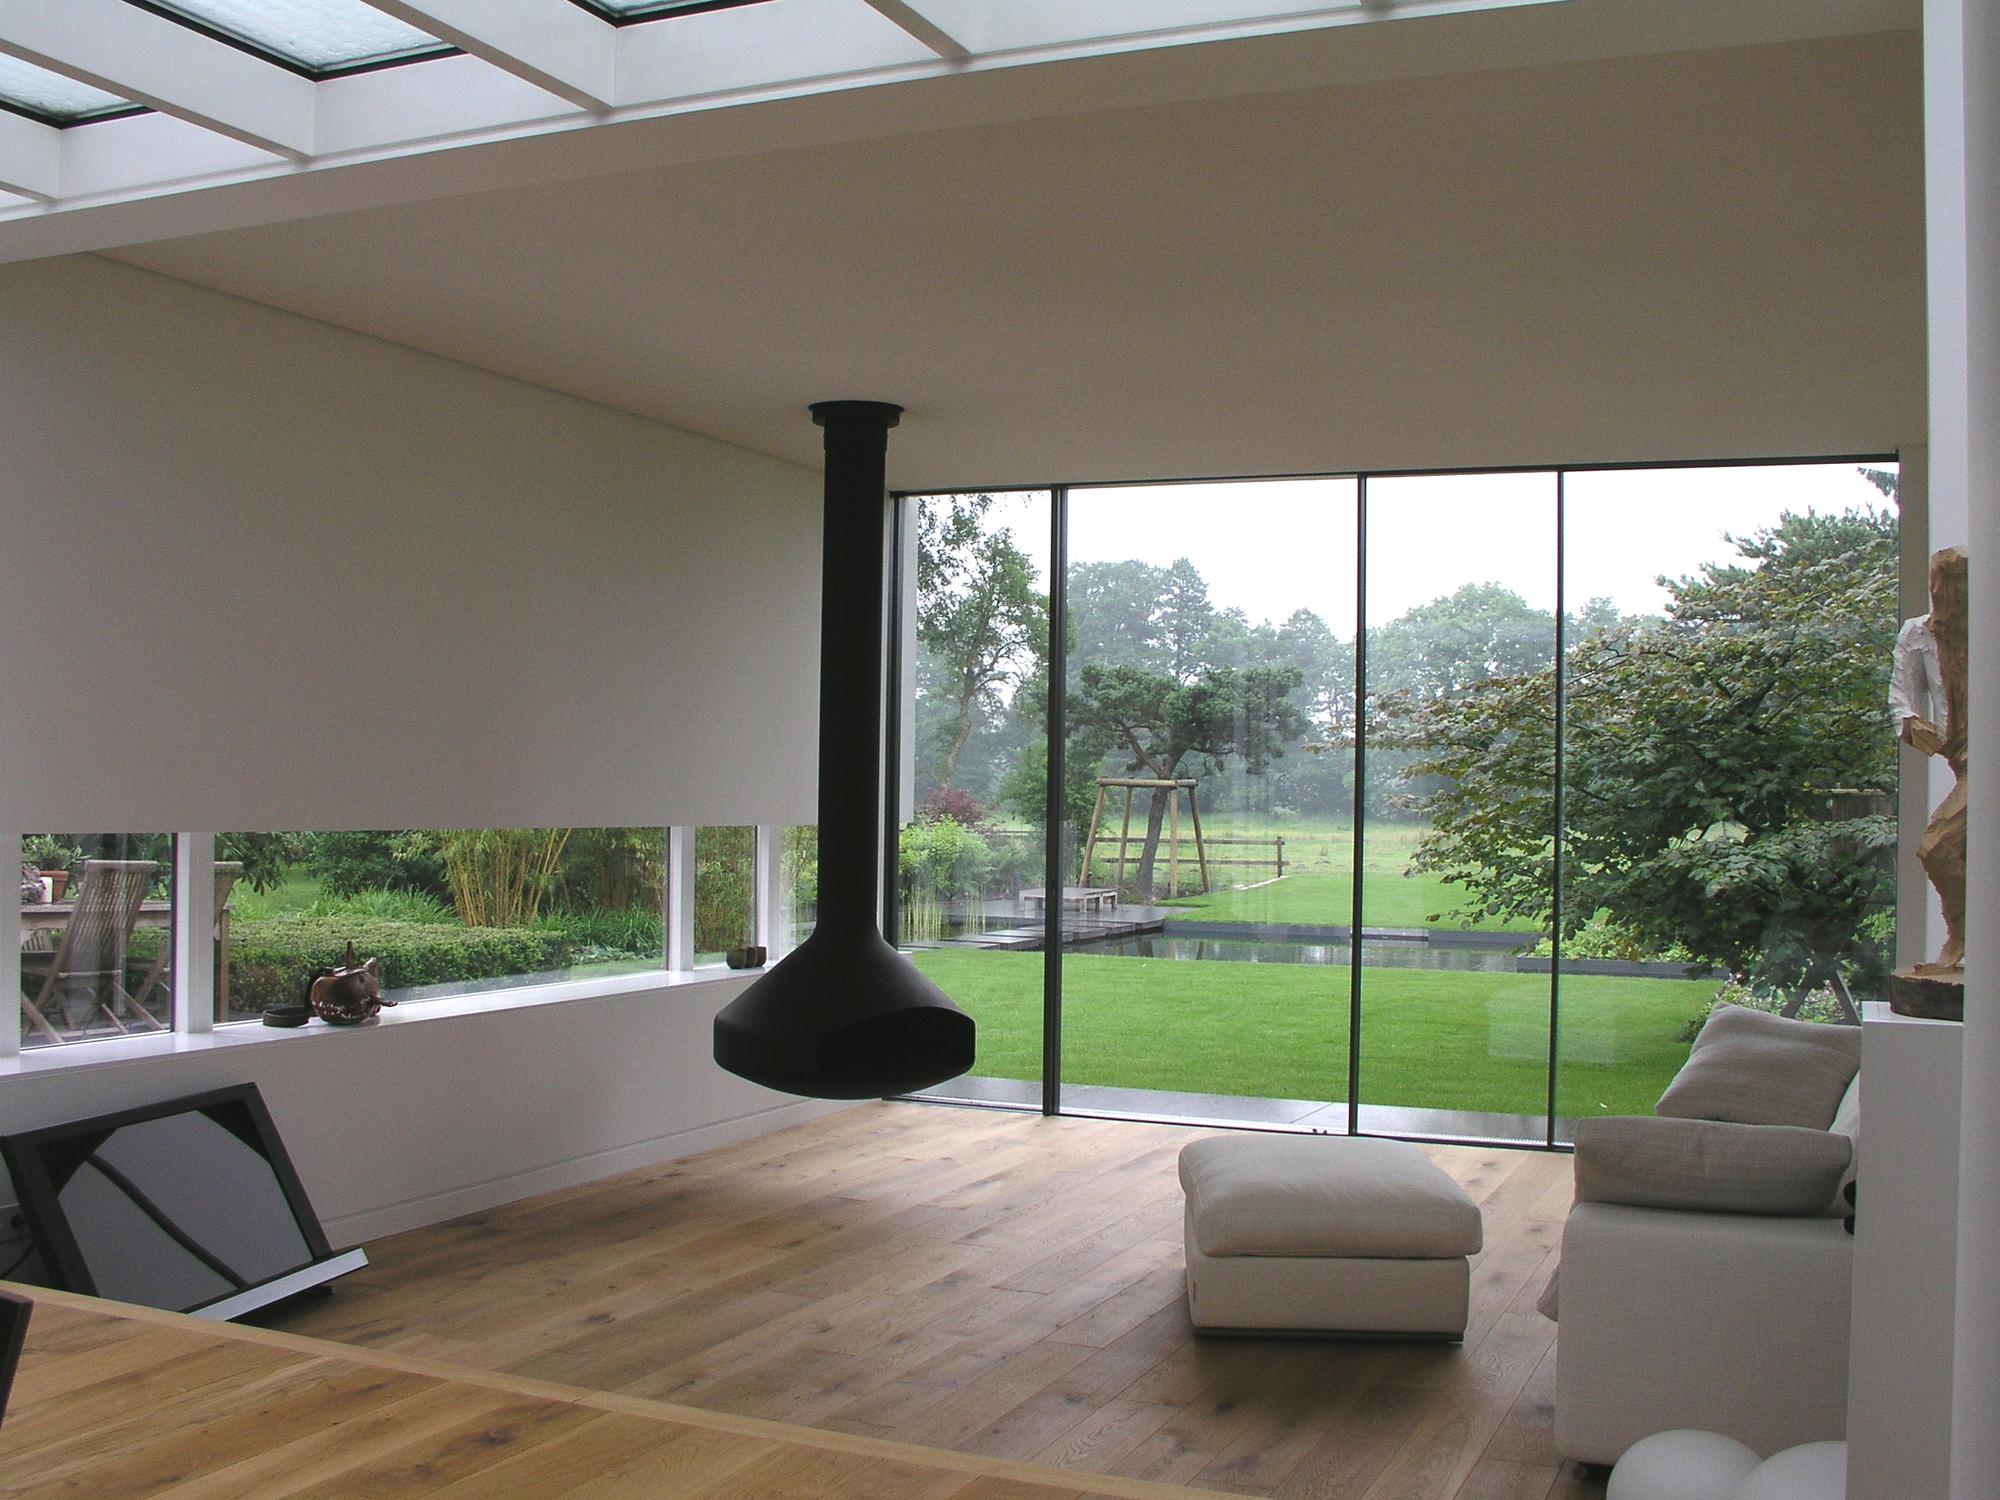 Wohnzimmer mit optimalem Gartenblick #kamin ©Frank Püffel